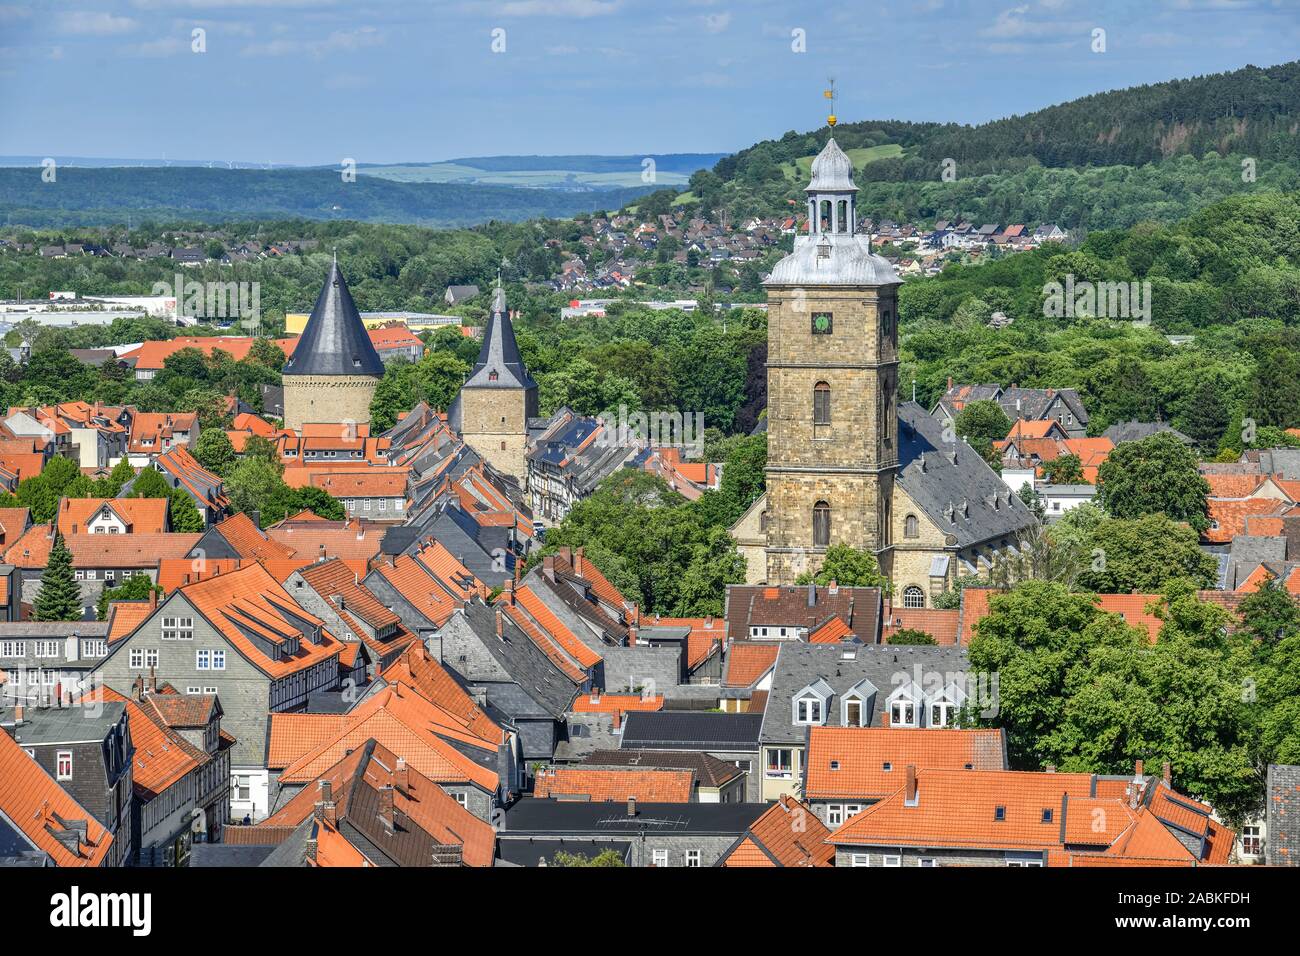 Totale Altstadt, Goslar, Niedersachsen, Deutschland Stock Photo